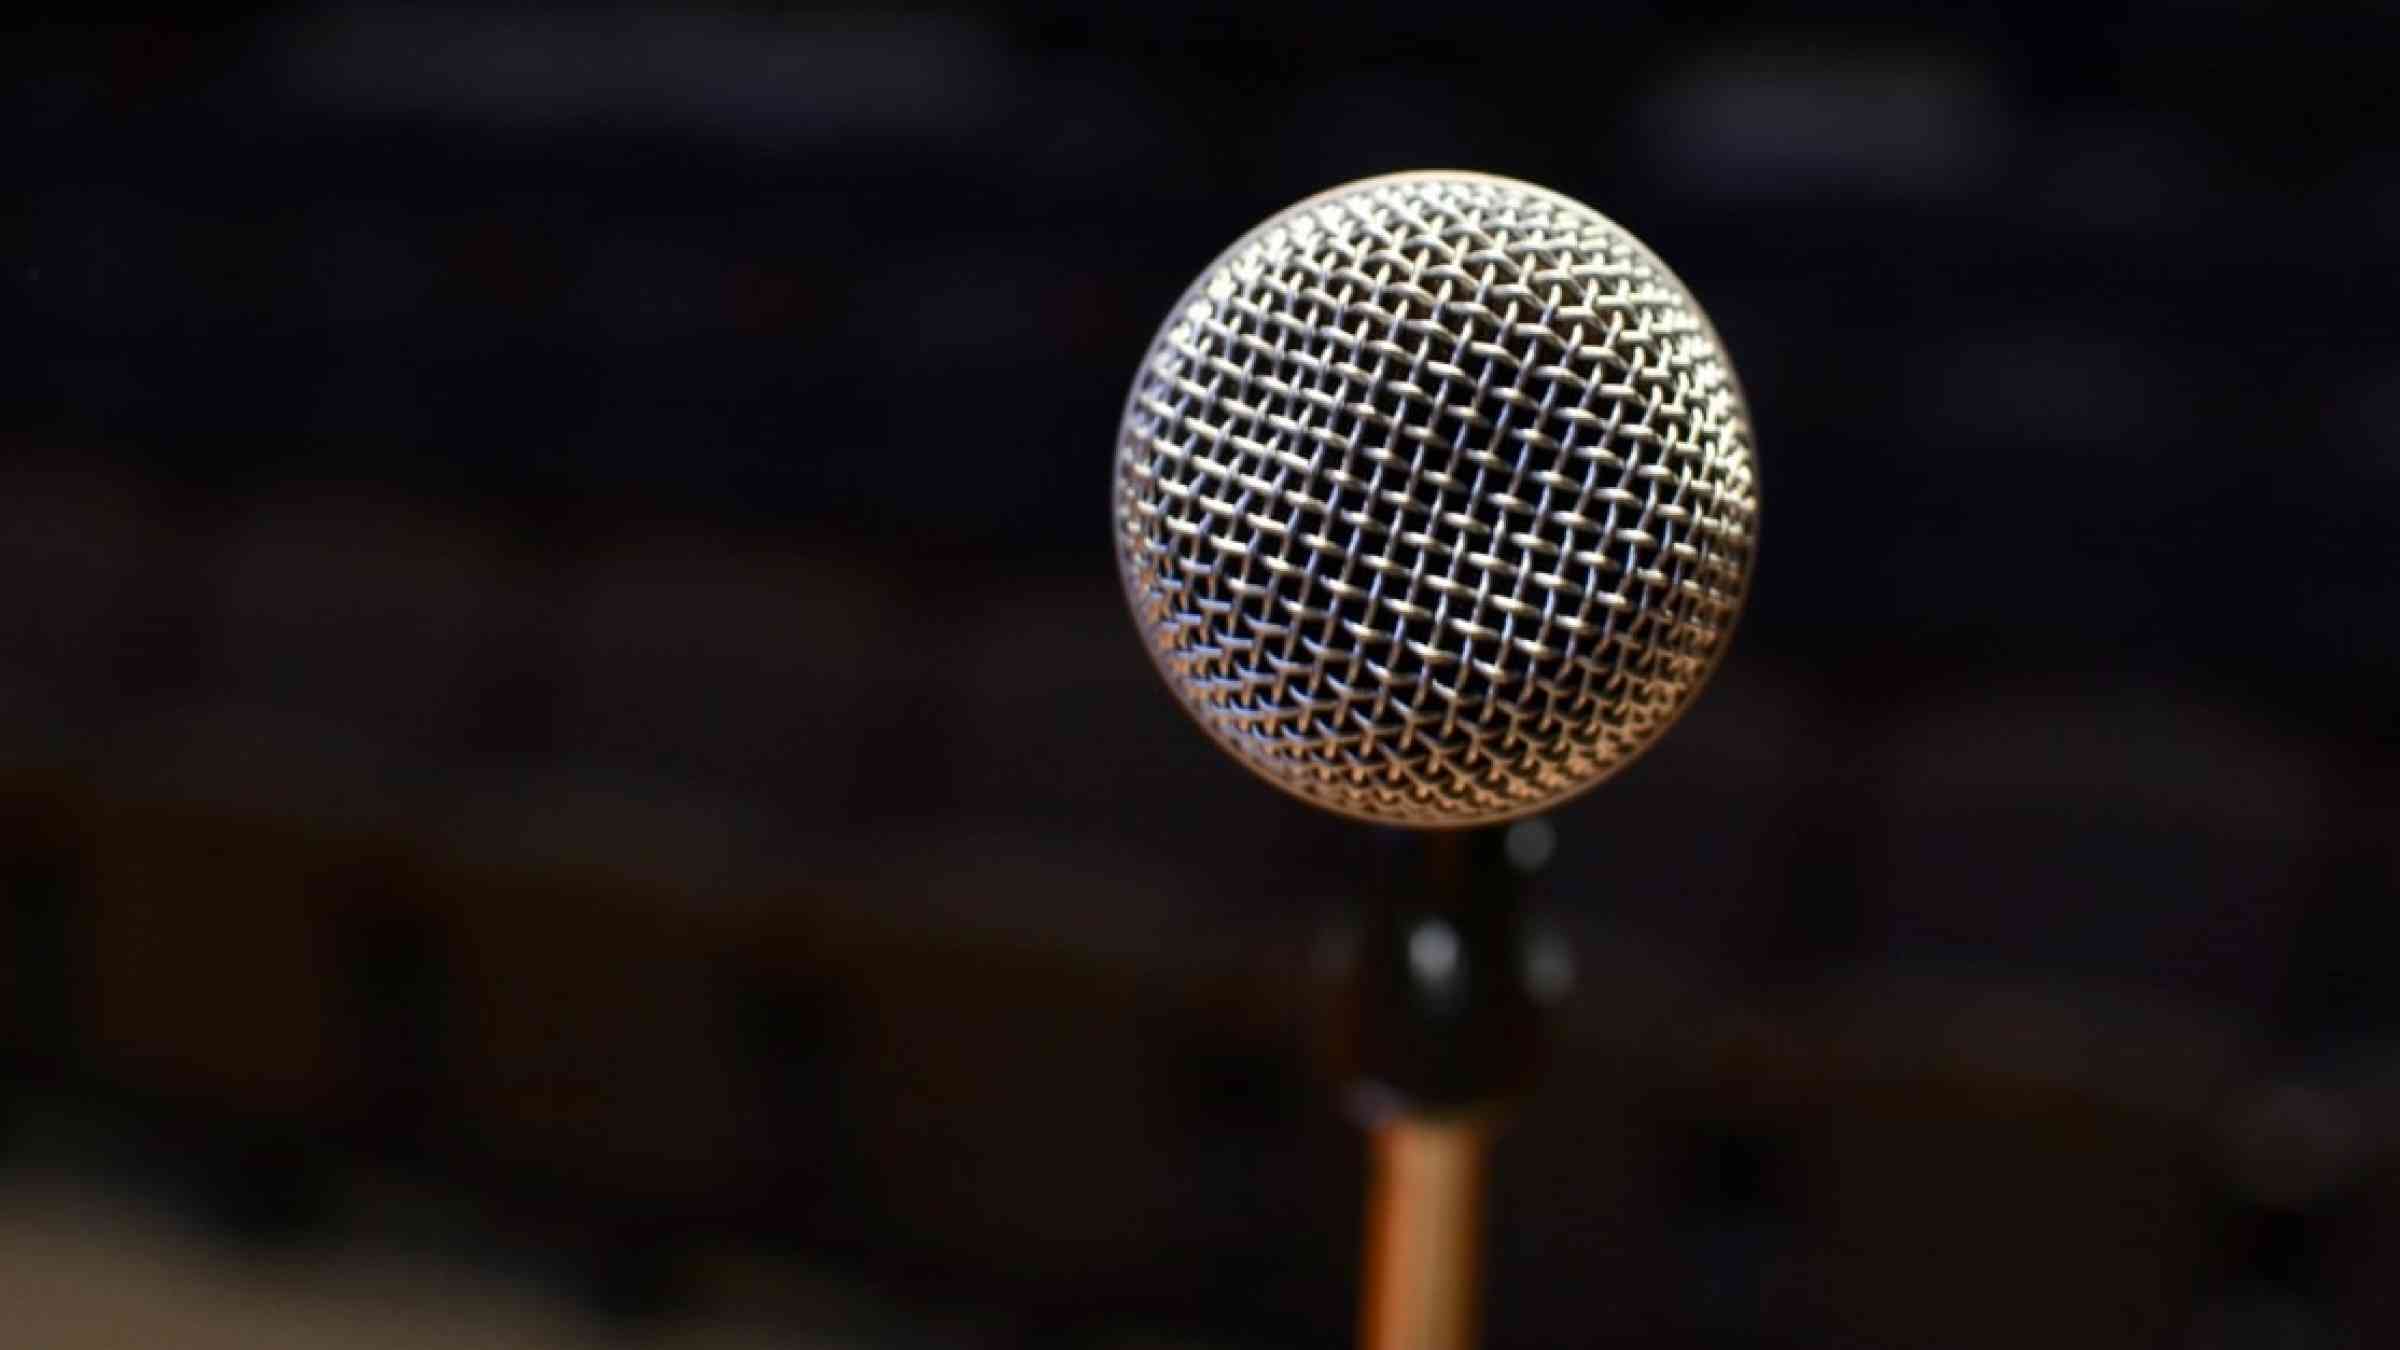 Speakers' microphone